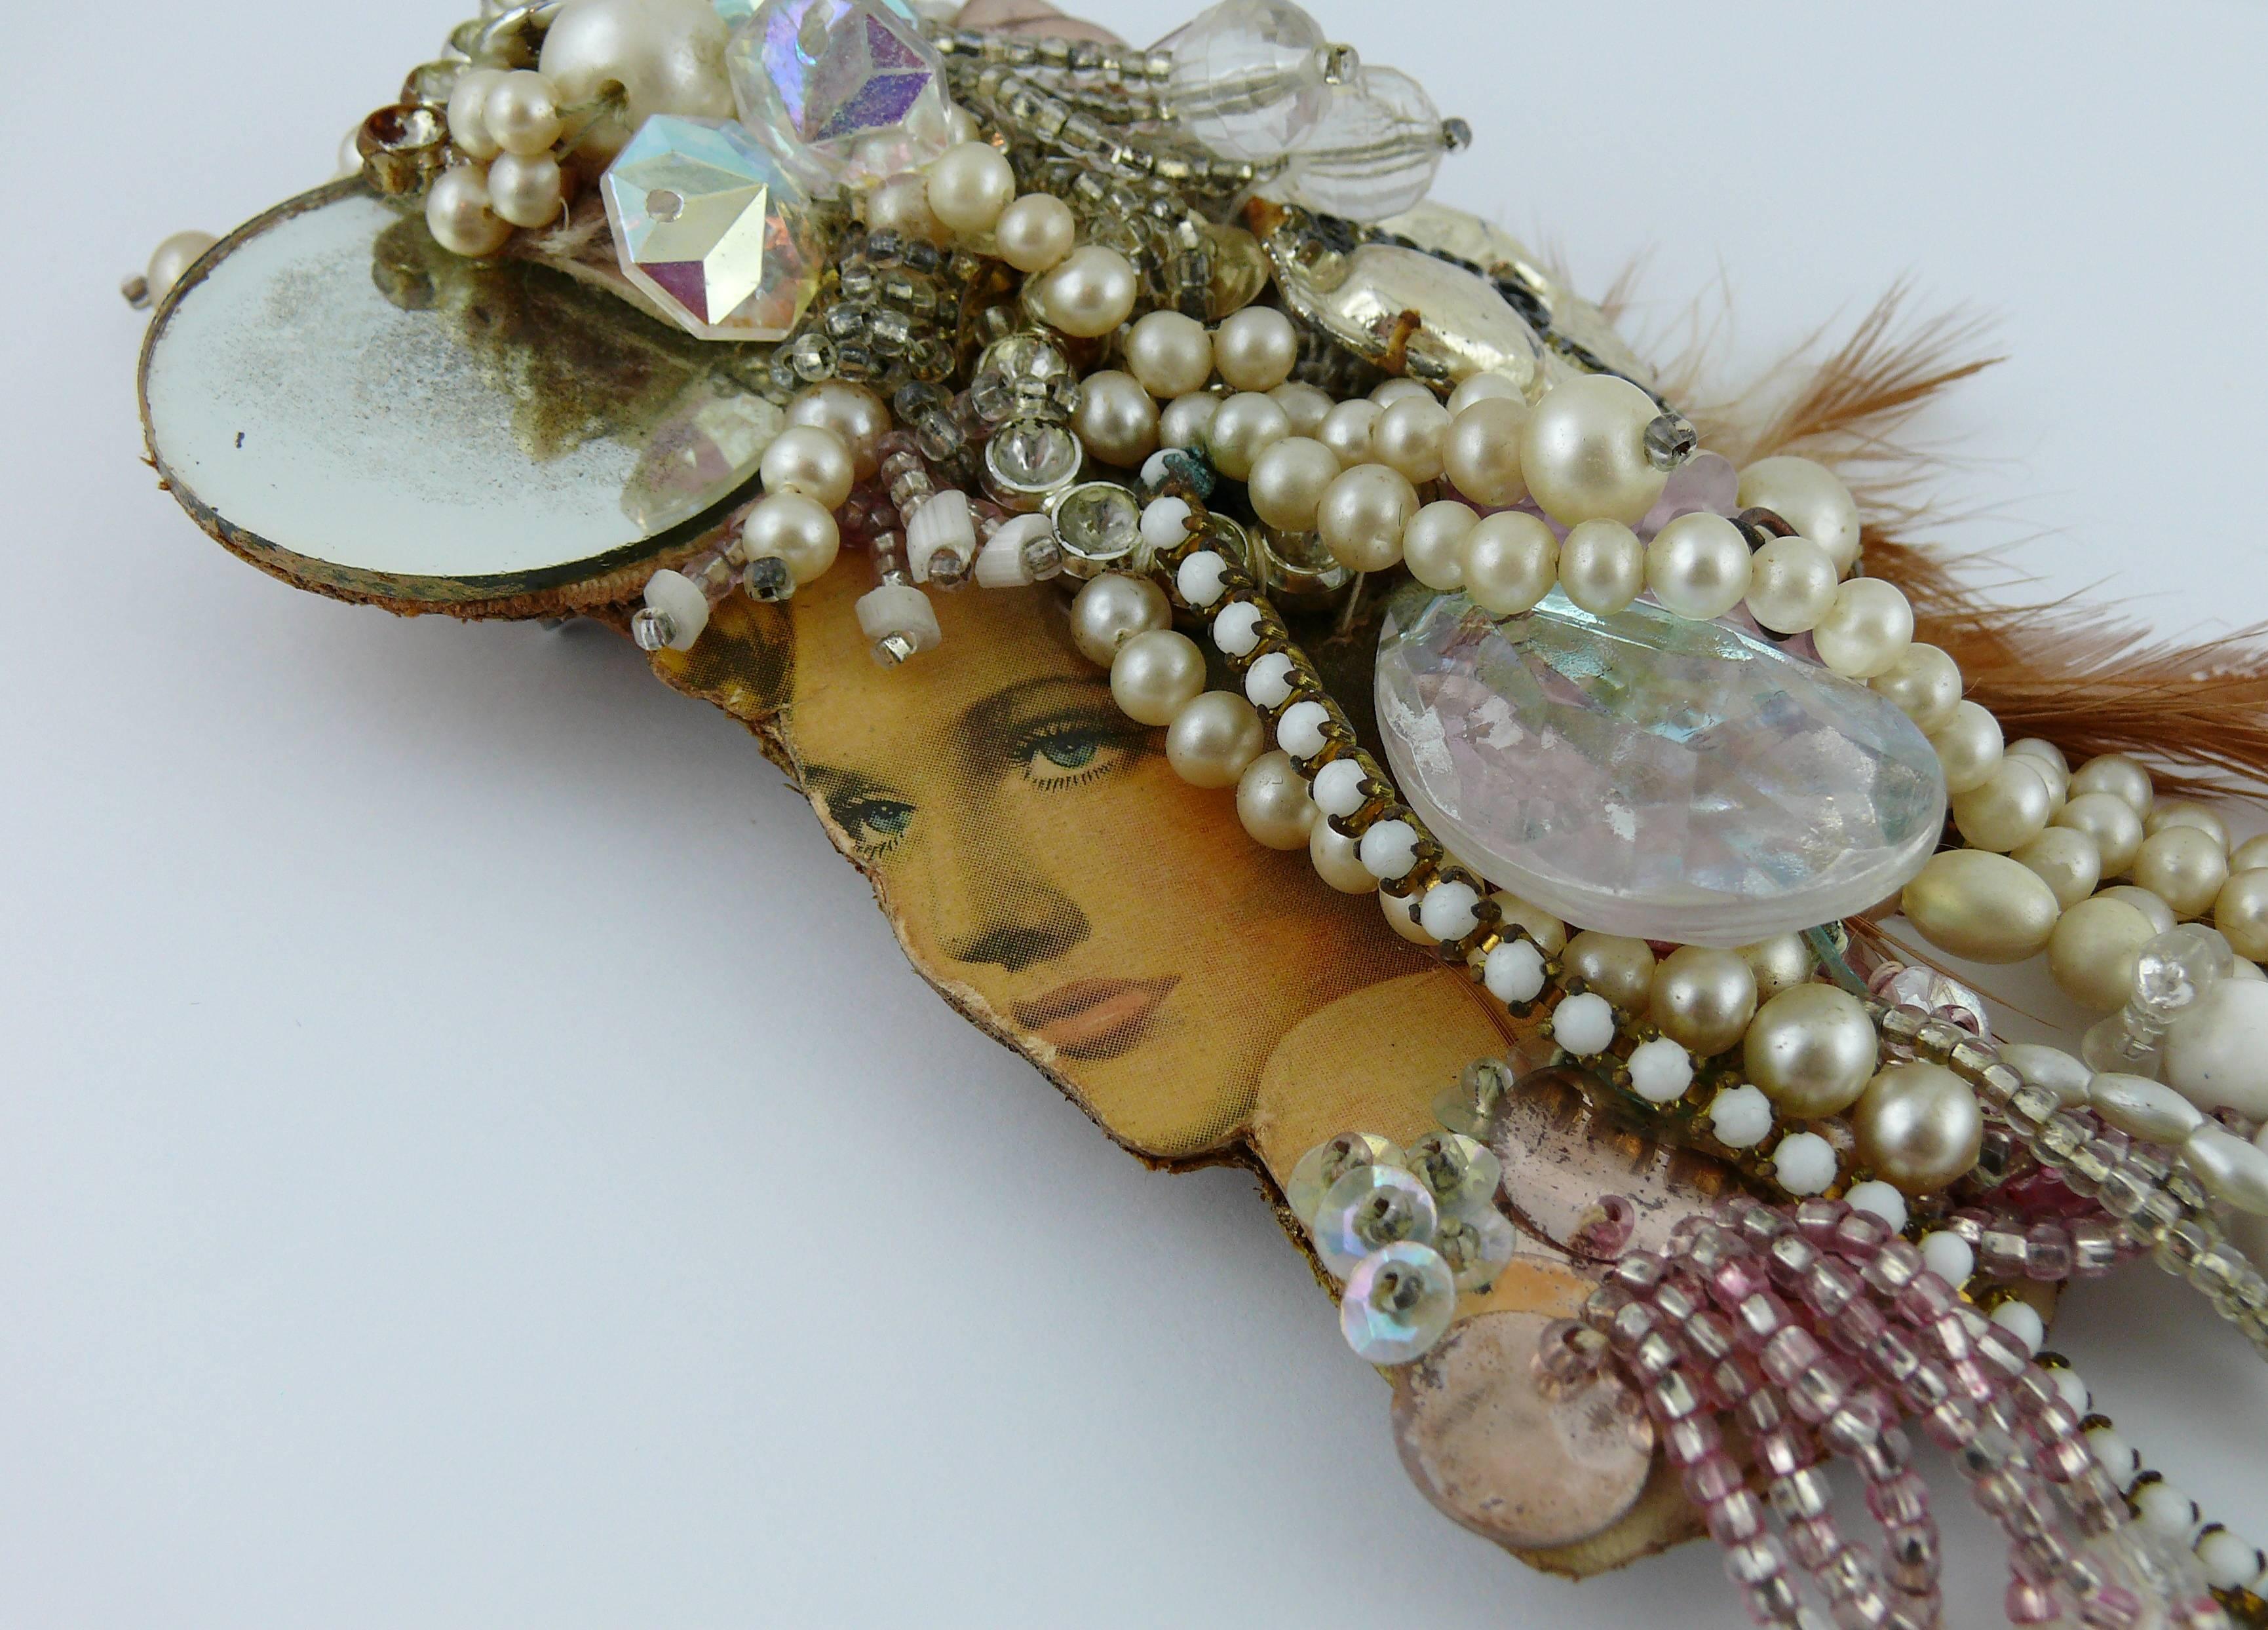 LILIANE MULLER fabuleuse broche vintage opulente représentant un profil rétro de femme imprimé, agrémentée de fausses perles, de perles de verre, de cabochons en résine, de miroir, de plumes, etc...

Label © LILIANE MULLER.

Mesures indicatives :